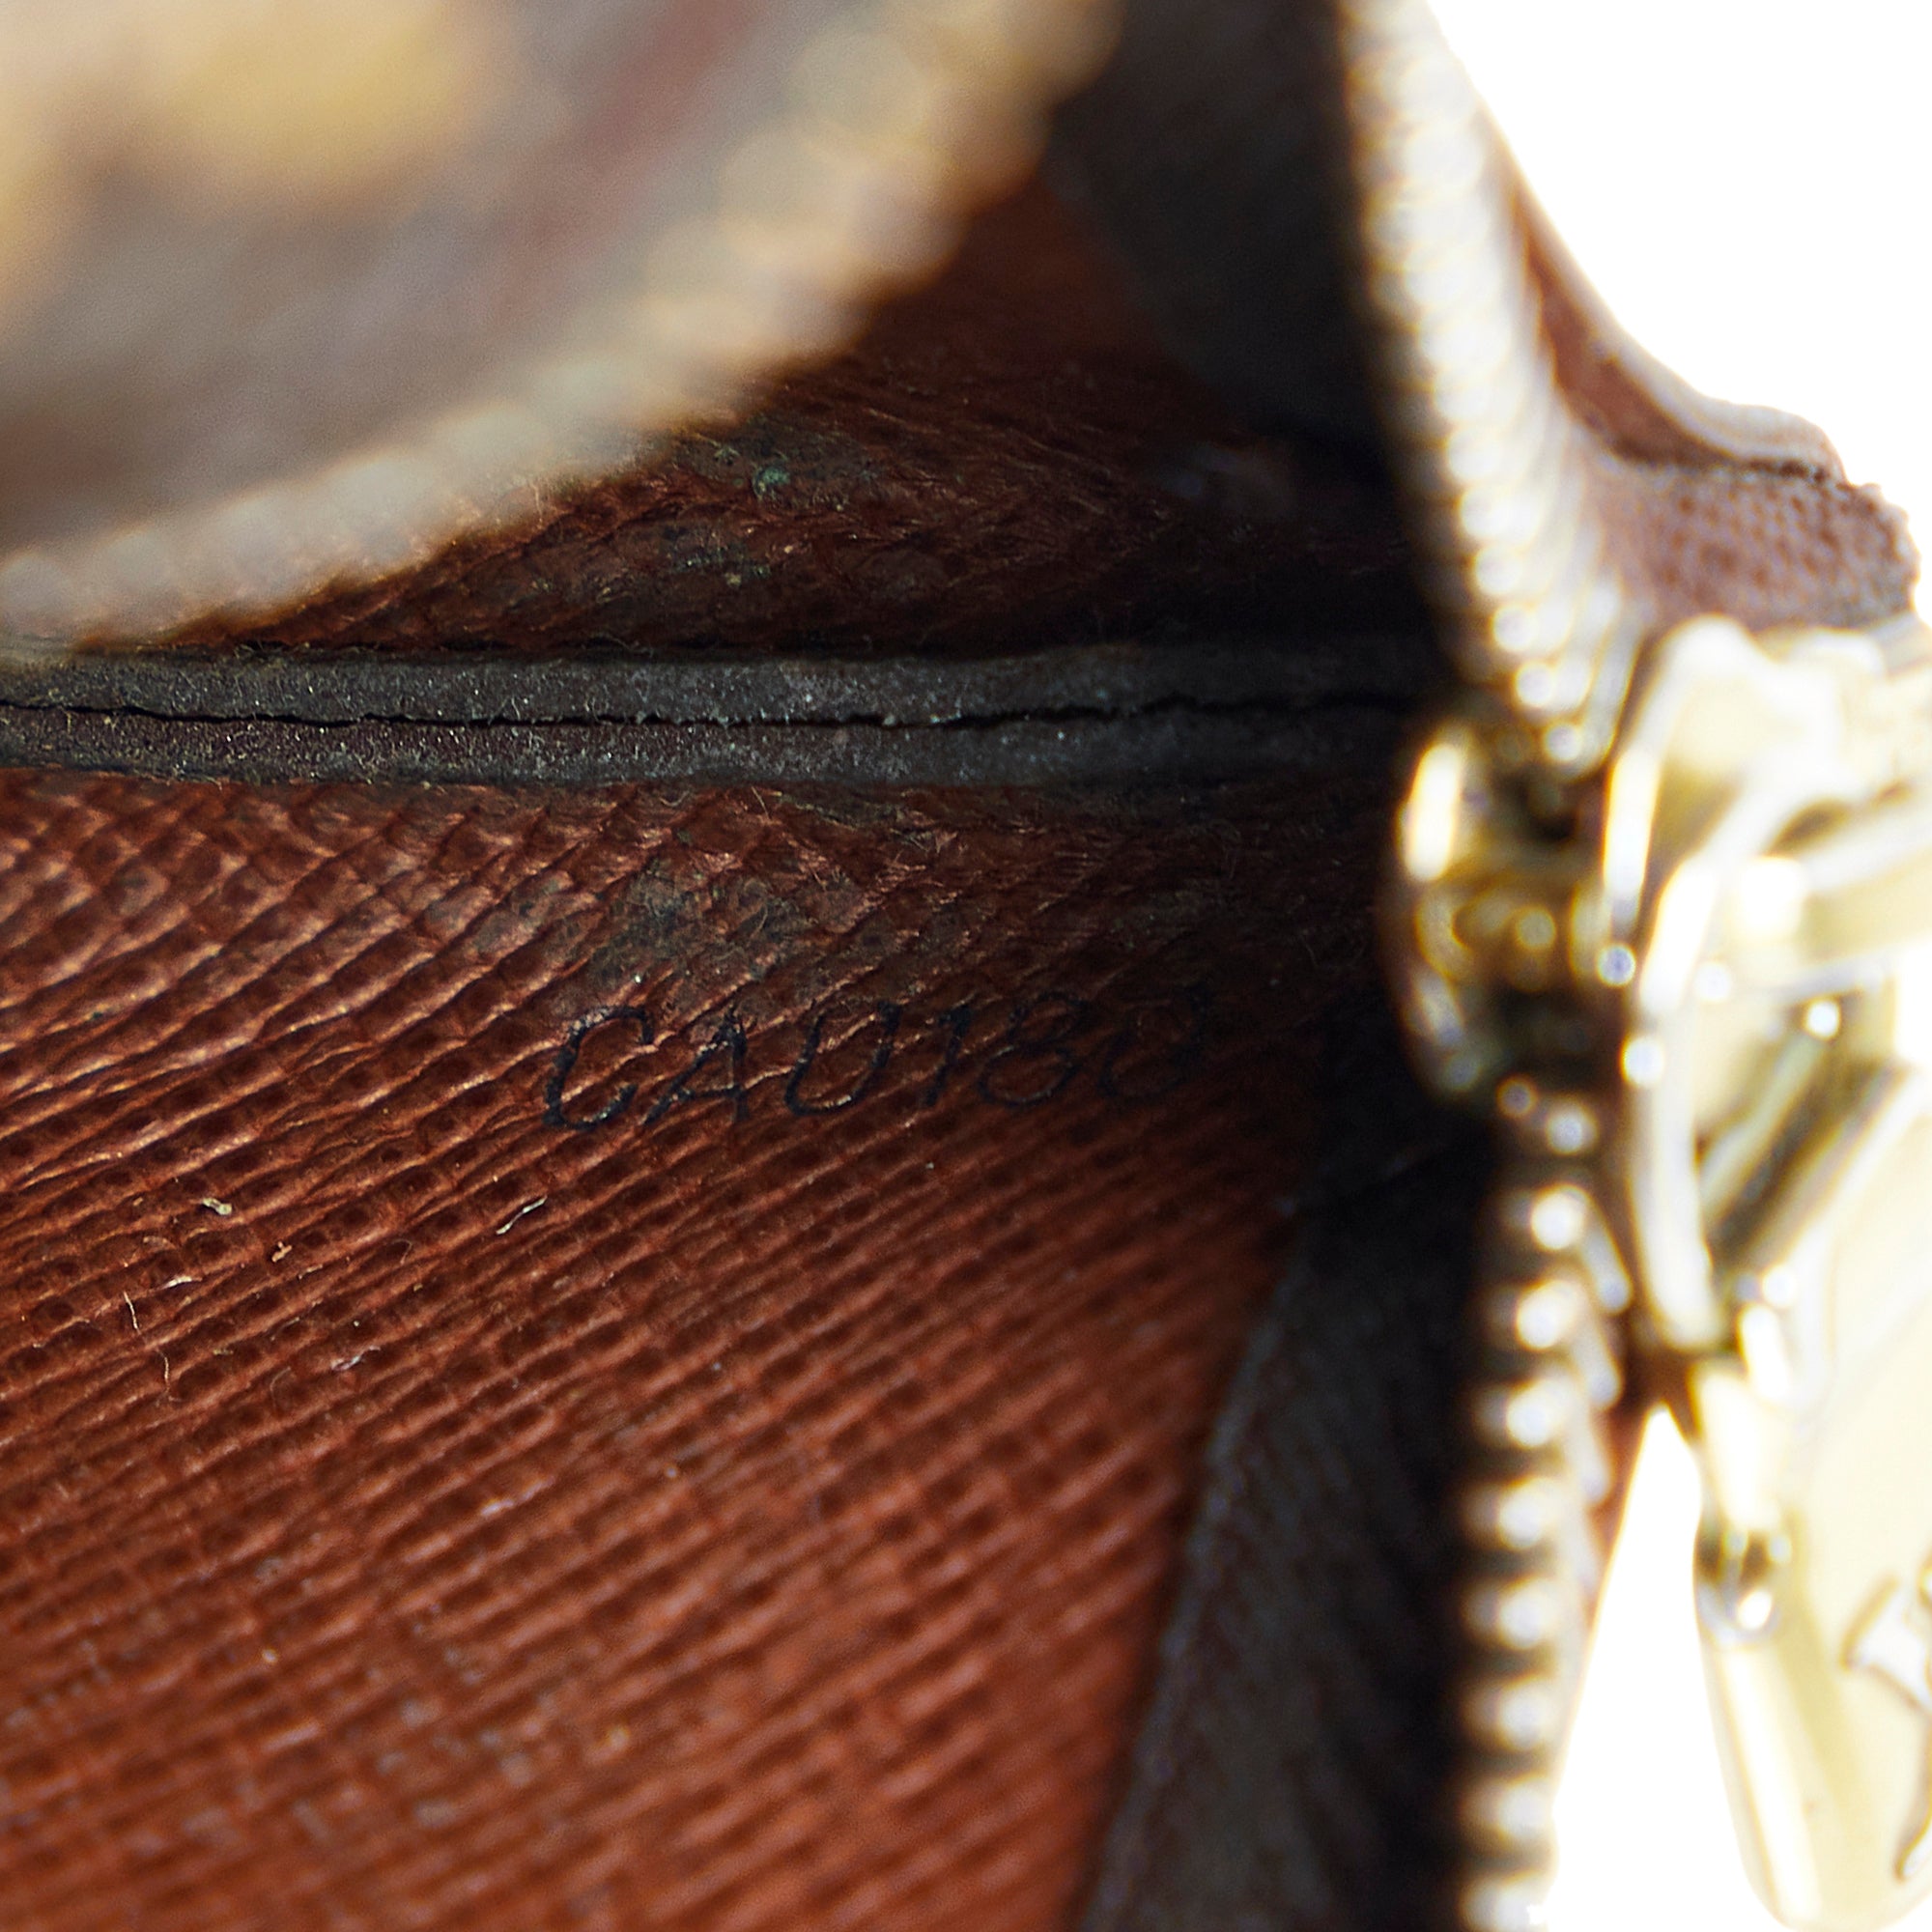 Louis Vuitton, Bags, Authenticity Guaranteed Louis Vuitton Monogram Pochette  Cles Coin Purse Case